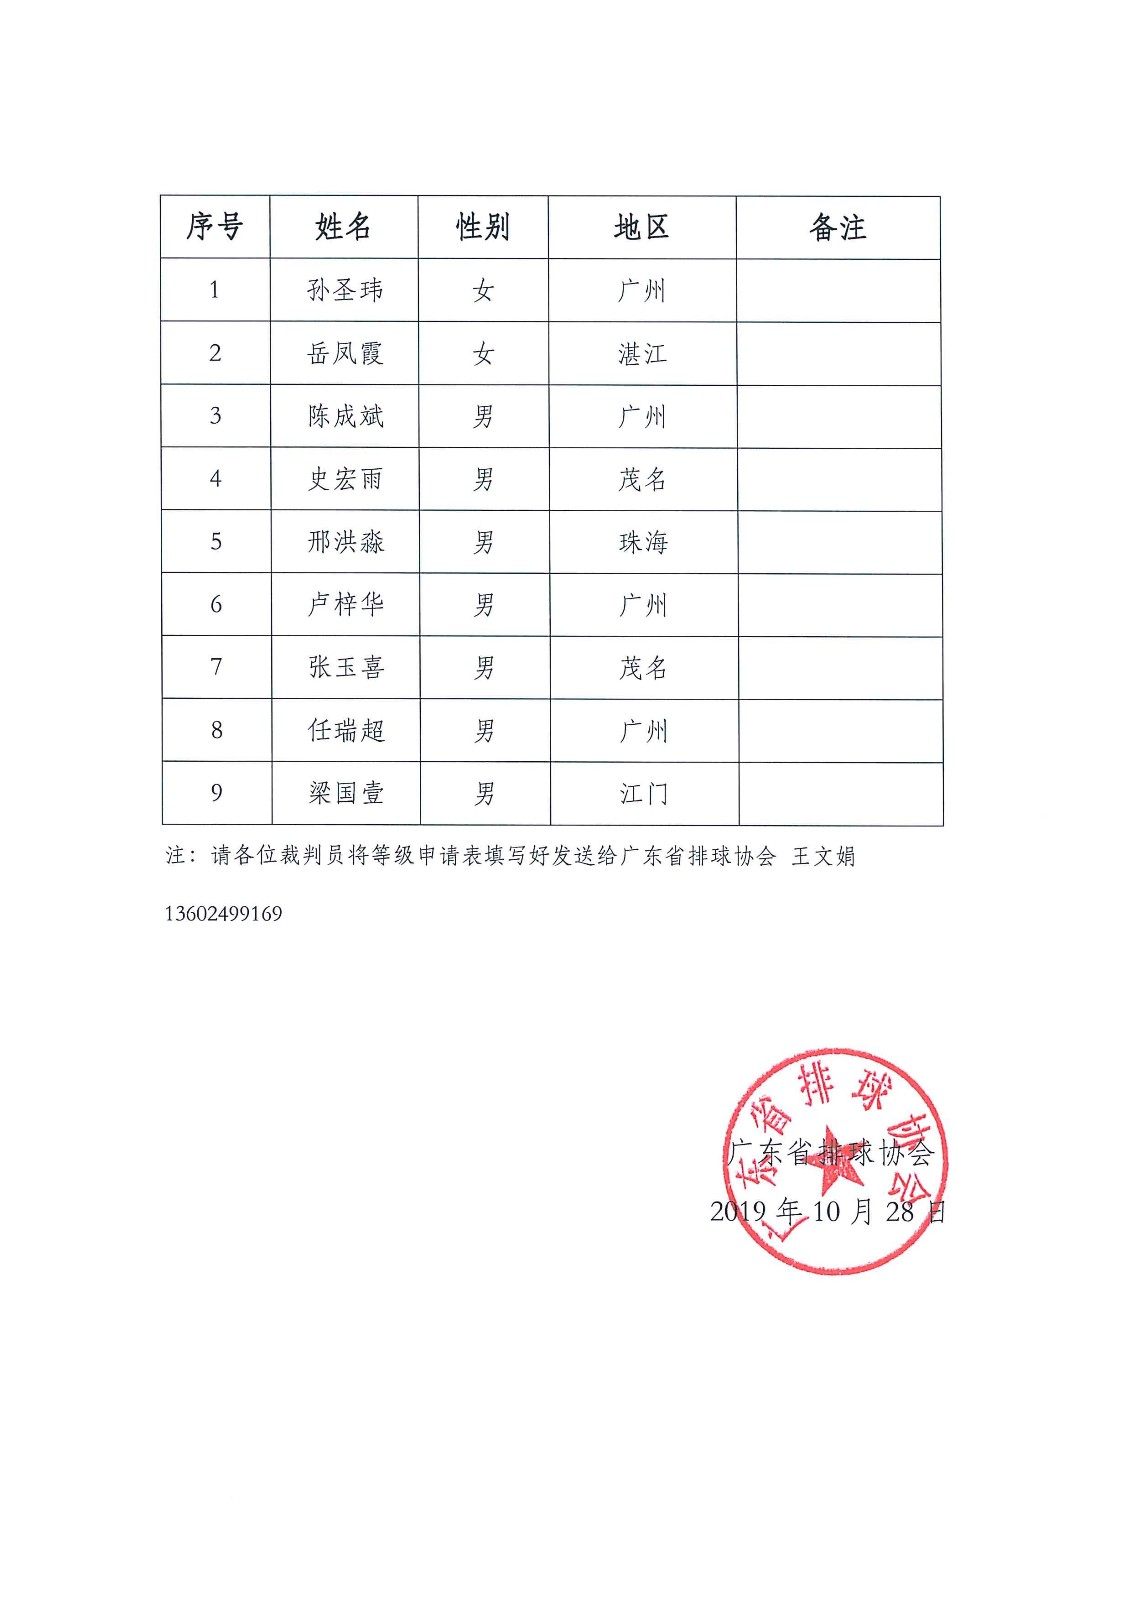 关于2019年广东省推荐气排球项目晋升国家级裁判员报名名单的公示2.jpg